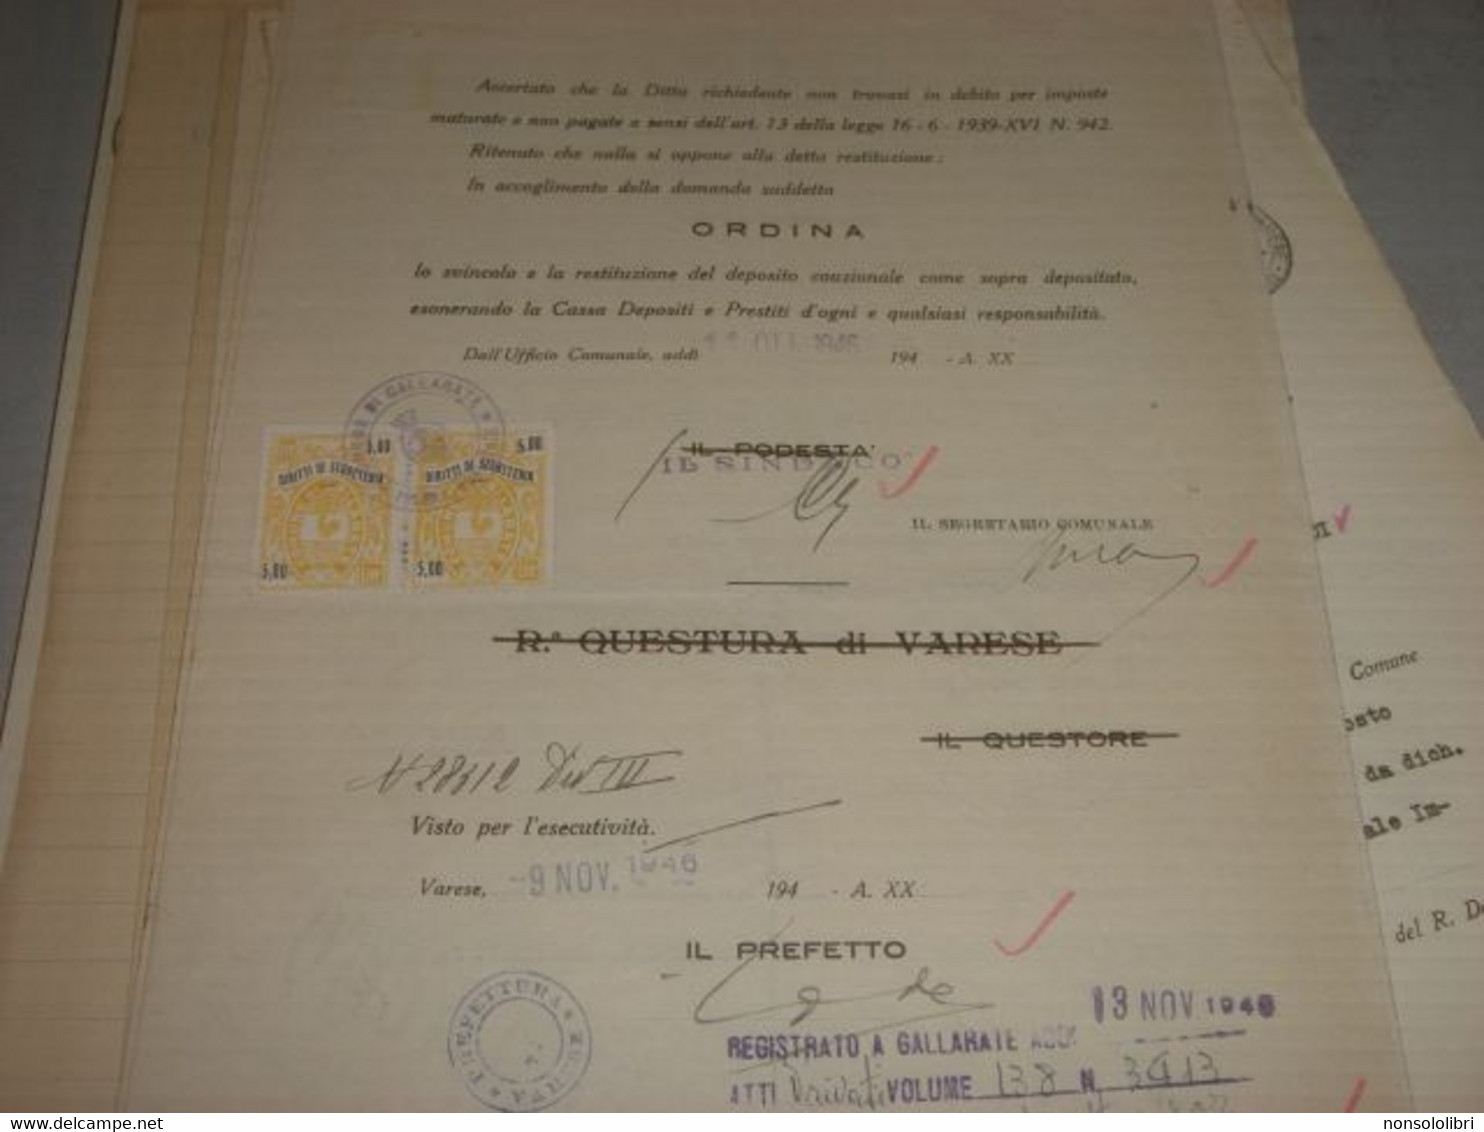 DOCUMENTO COMUNE DI GALLARATE 1946 CON MARCHE DA BOLLO COMUNE DI GALLARATE -DIRITTI DI SEGRETERIA - Fiscaux